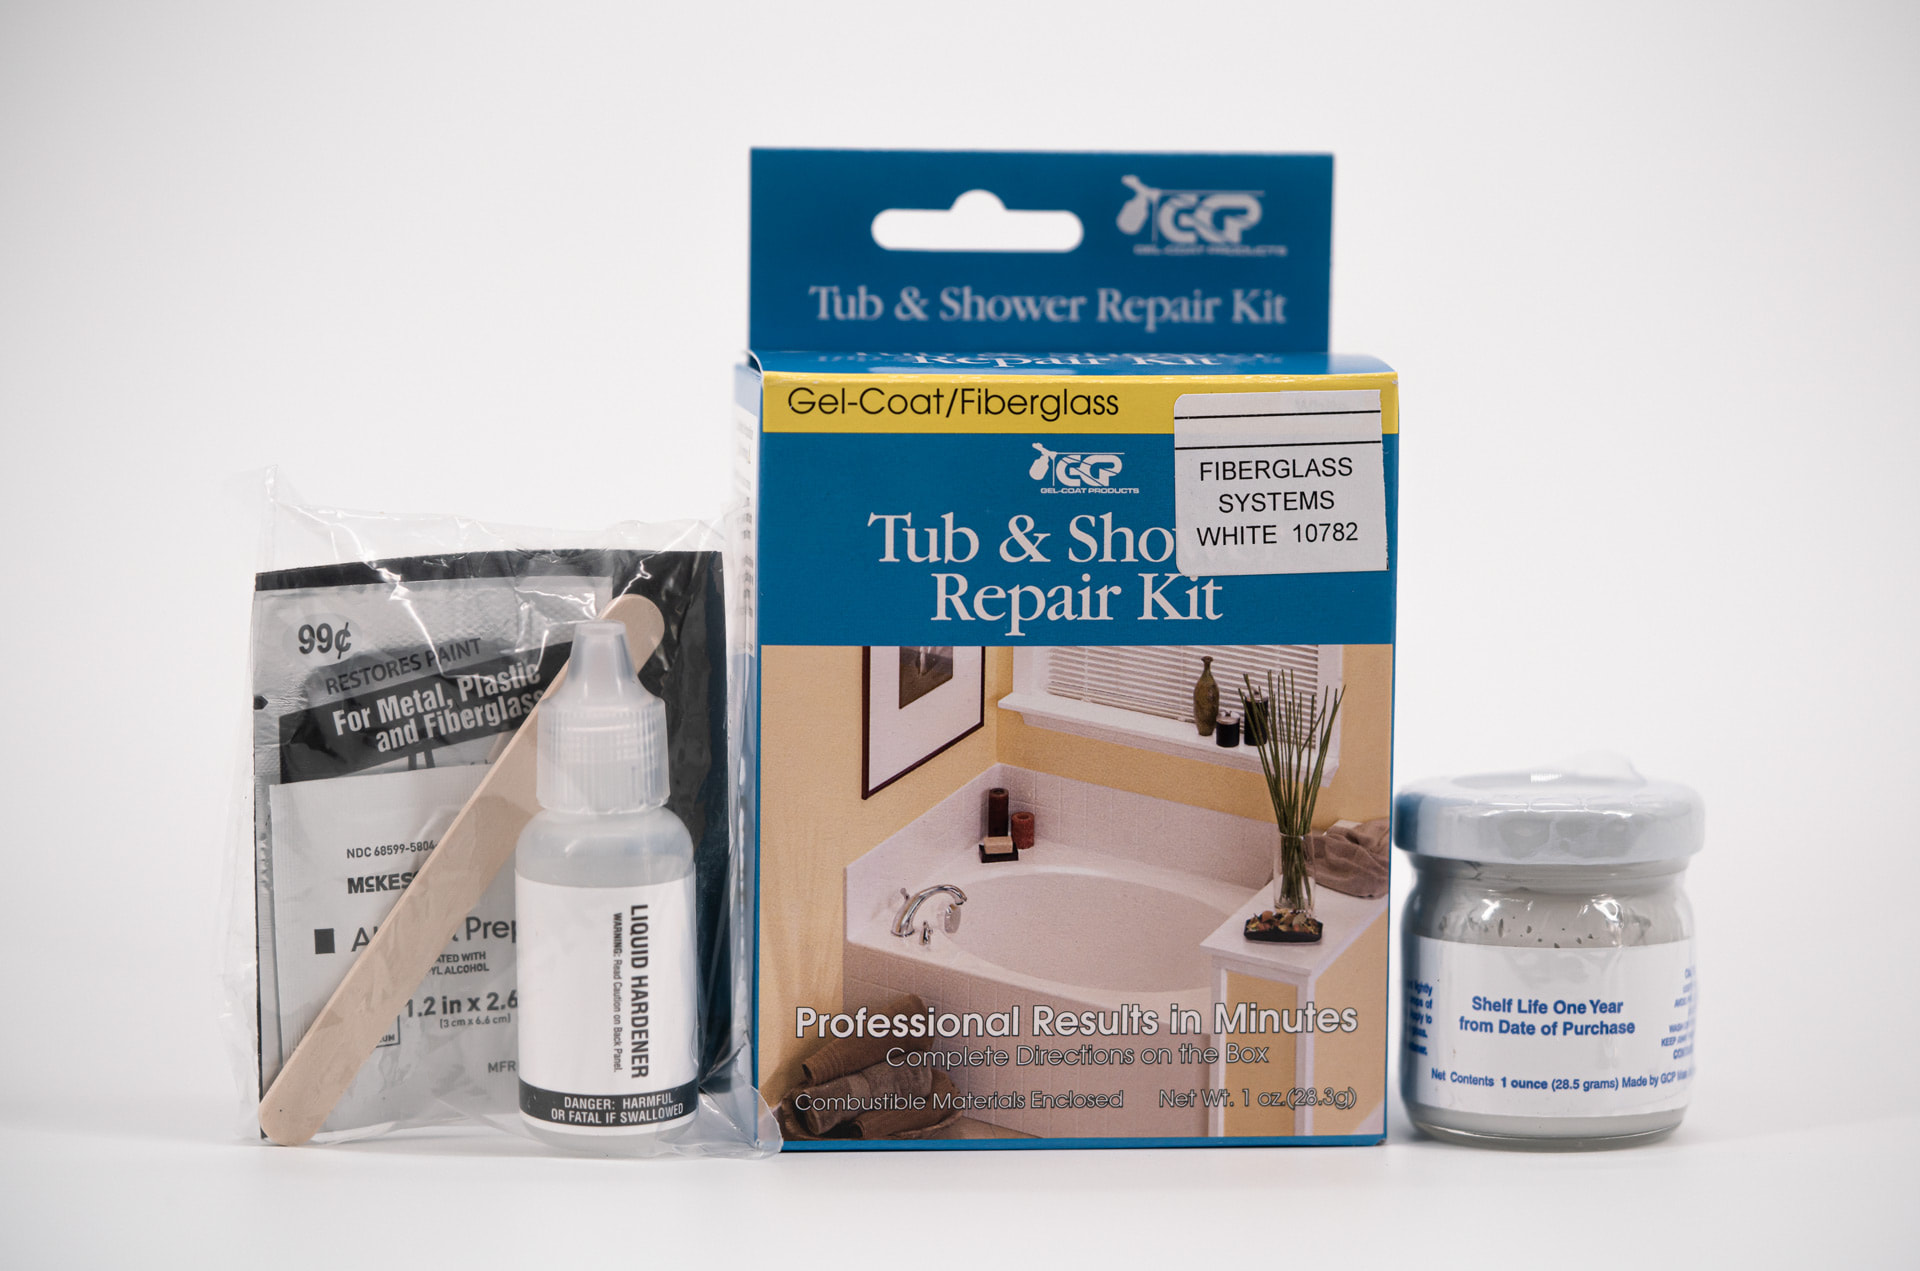 Gel-Coat Products 58-204 Tub and Shower Repair Kit, Bone